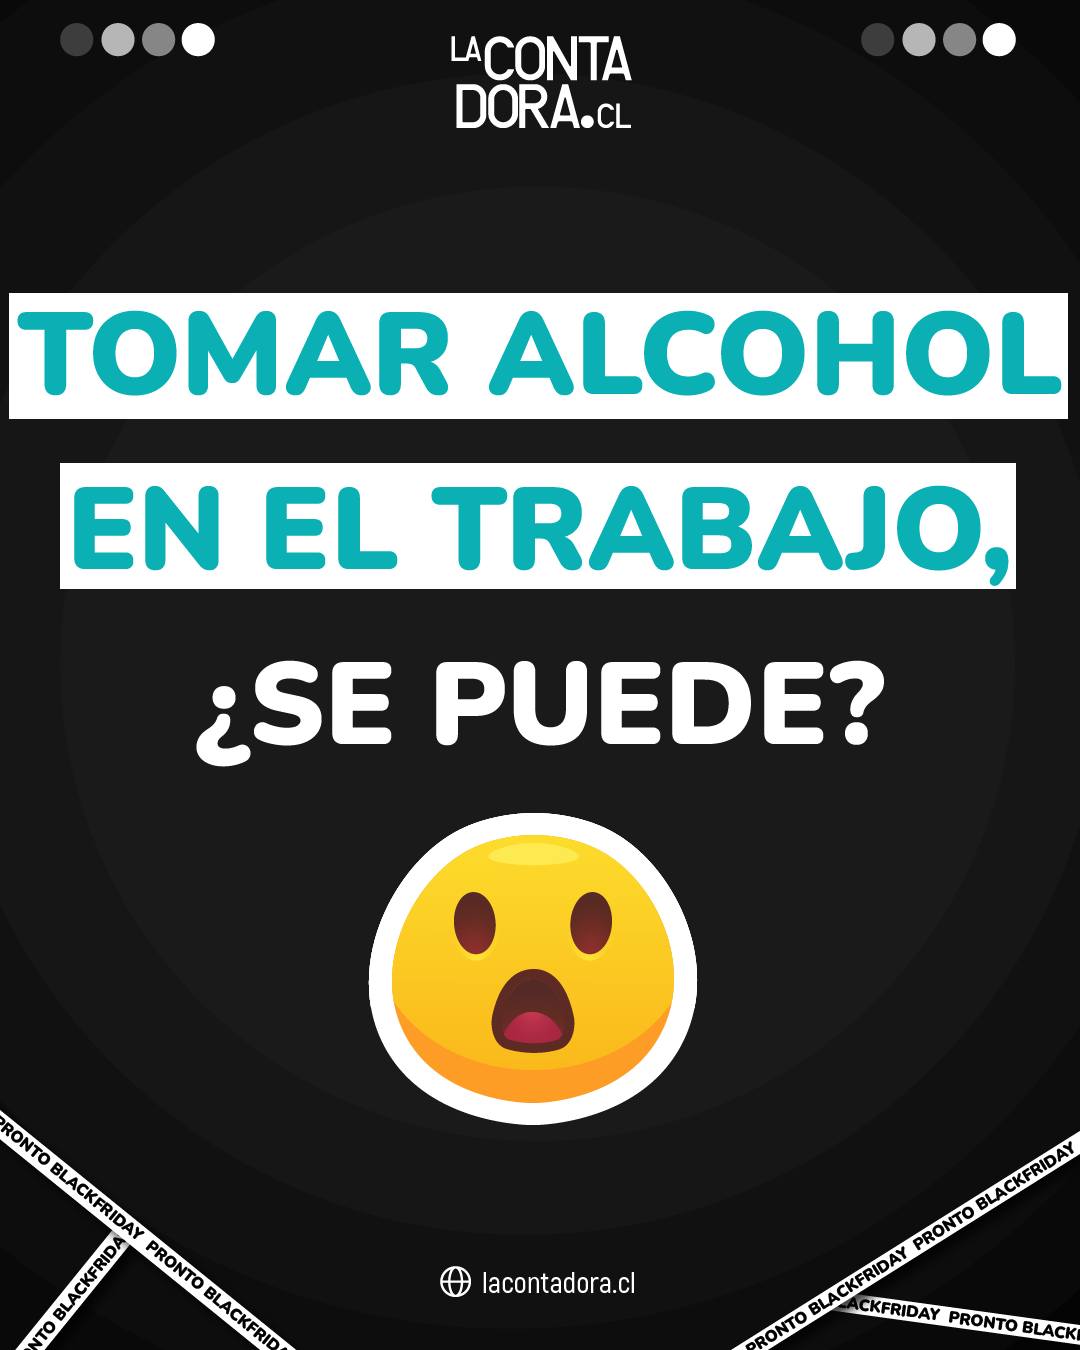 TOMAR ALCOHOL EN EL TRABAJO, ¿SE PUEDE?